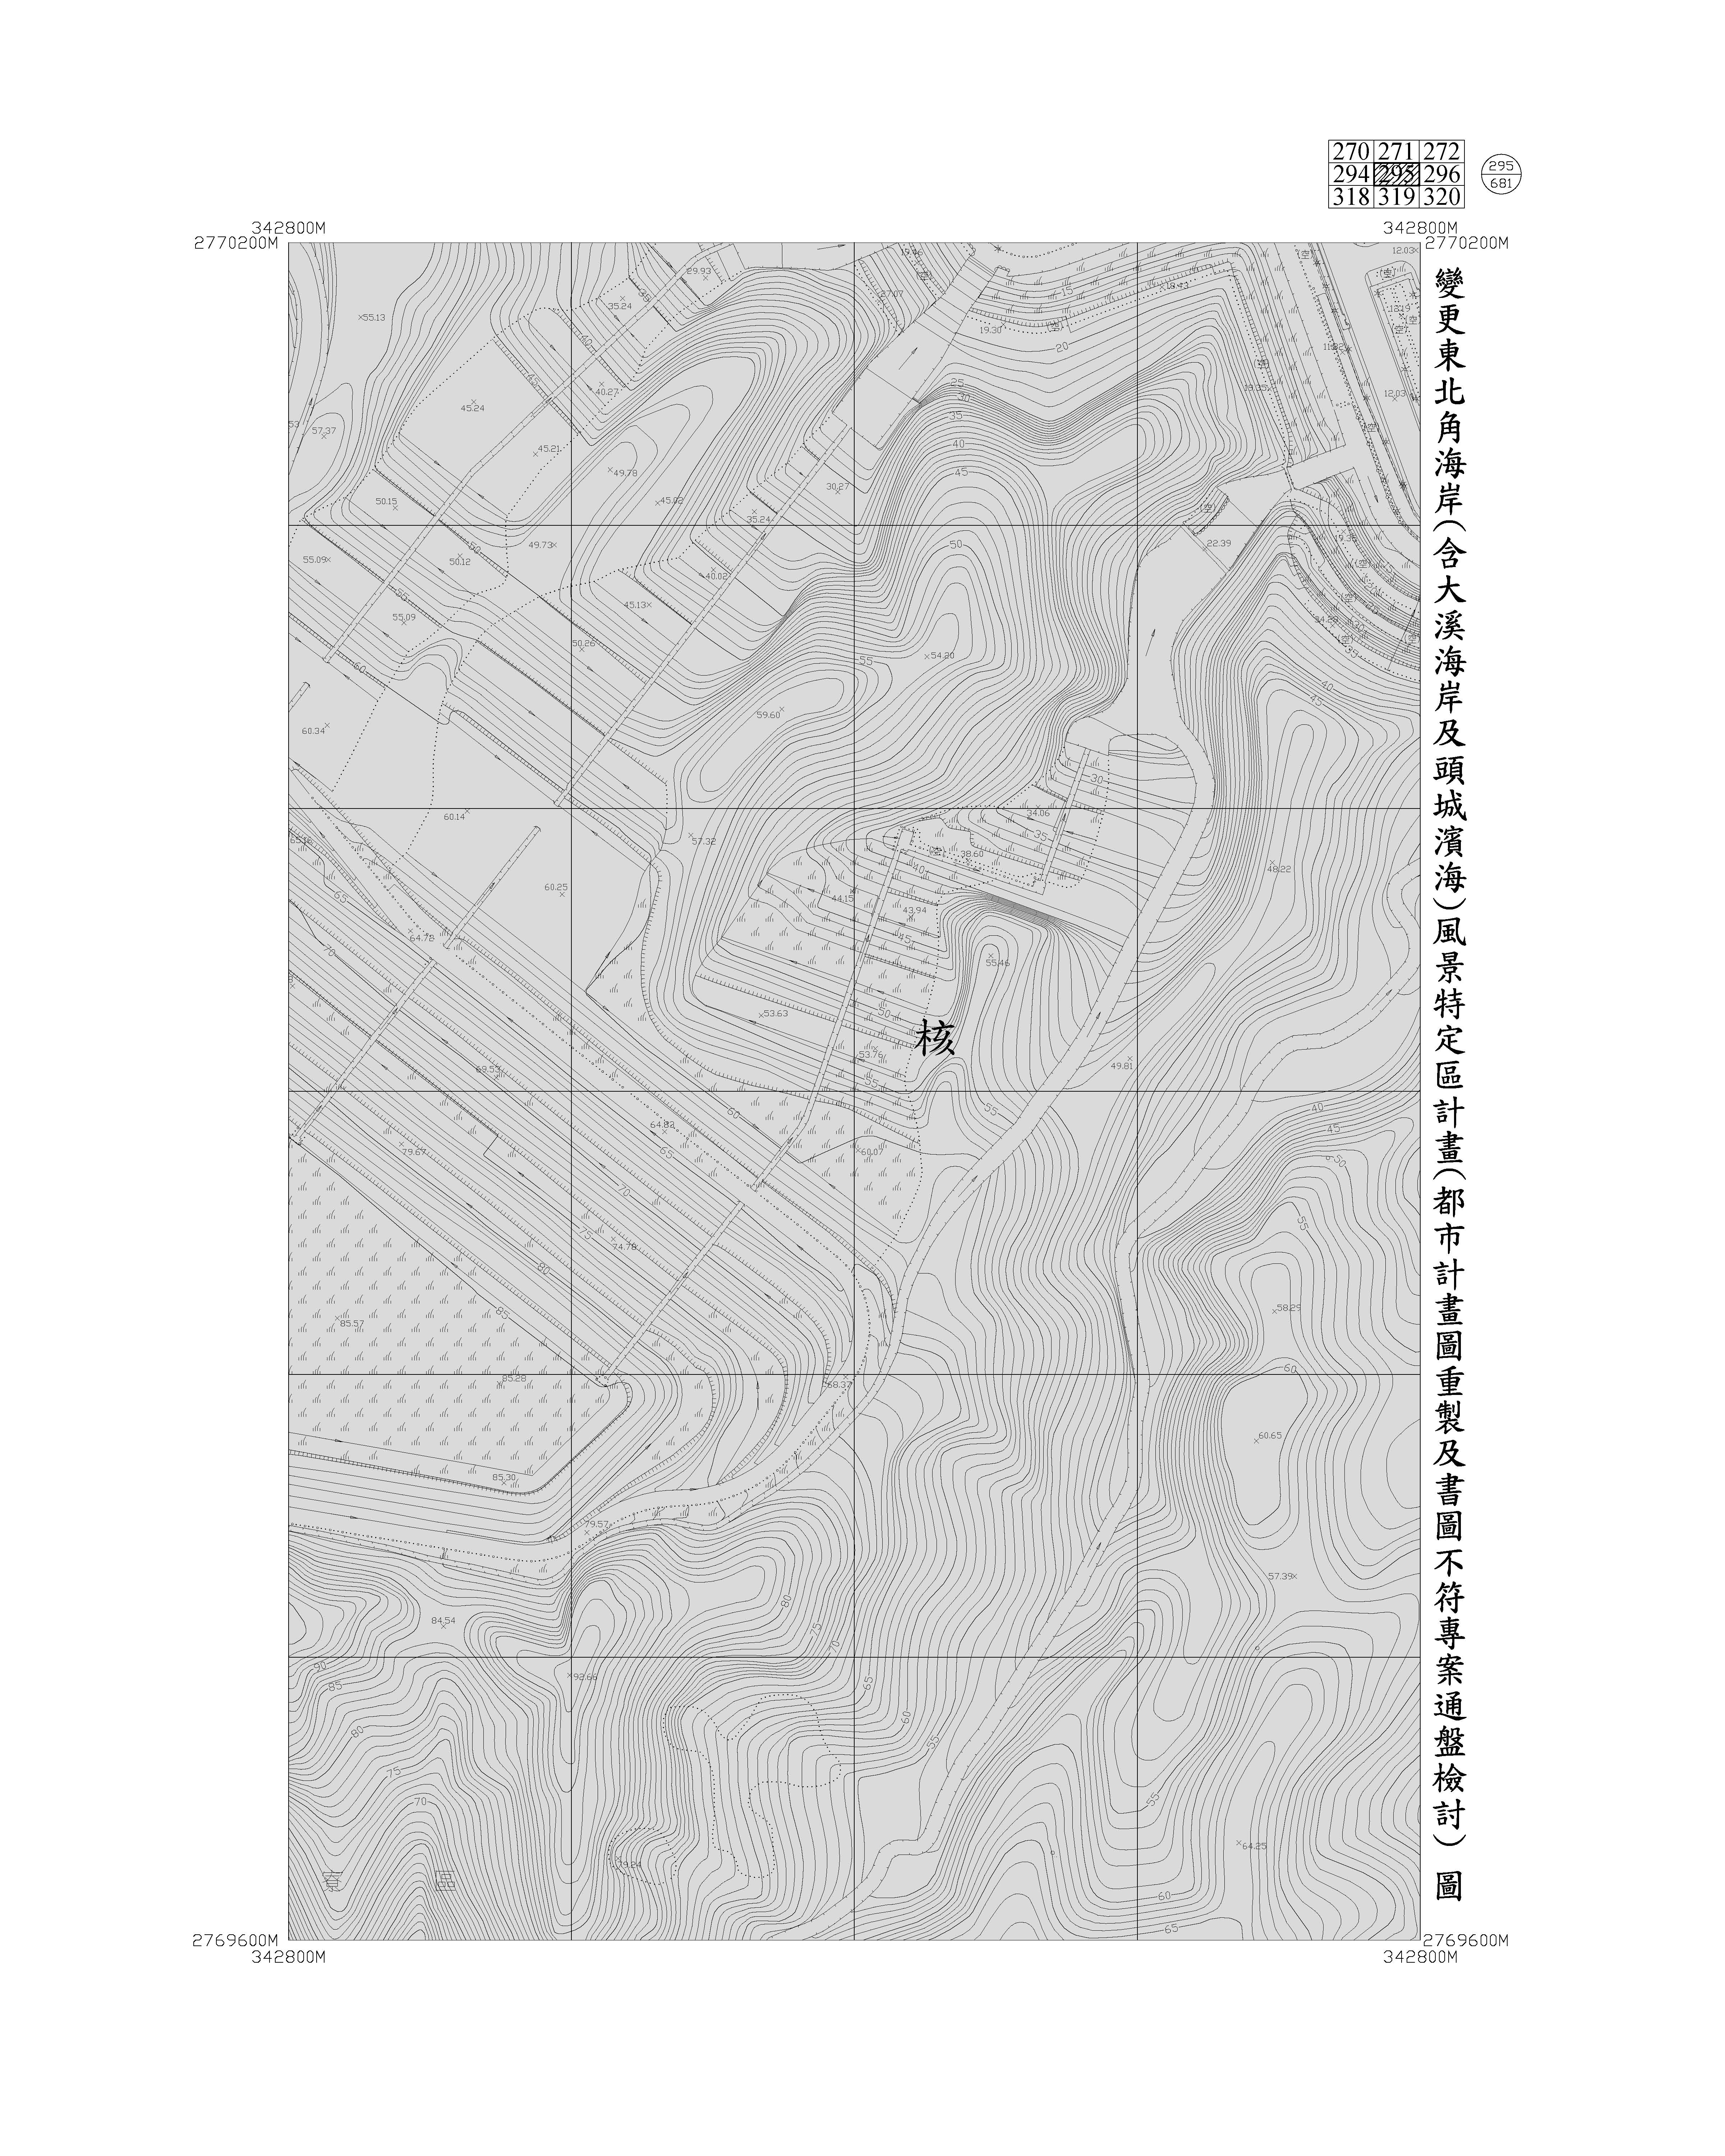 含大溪海岸及頭城濱海都市計畫圖重製及書圖不符專案通盤檢討圖資304